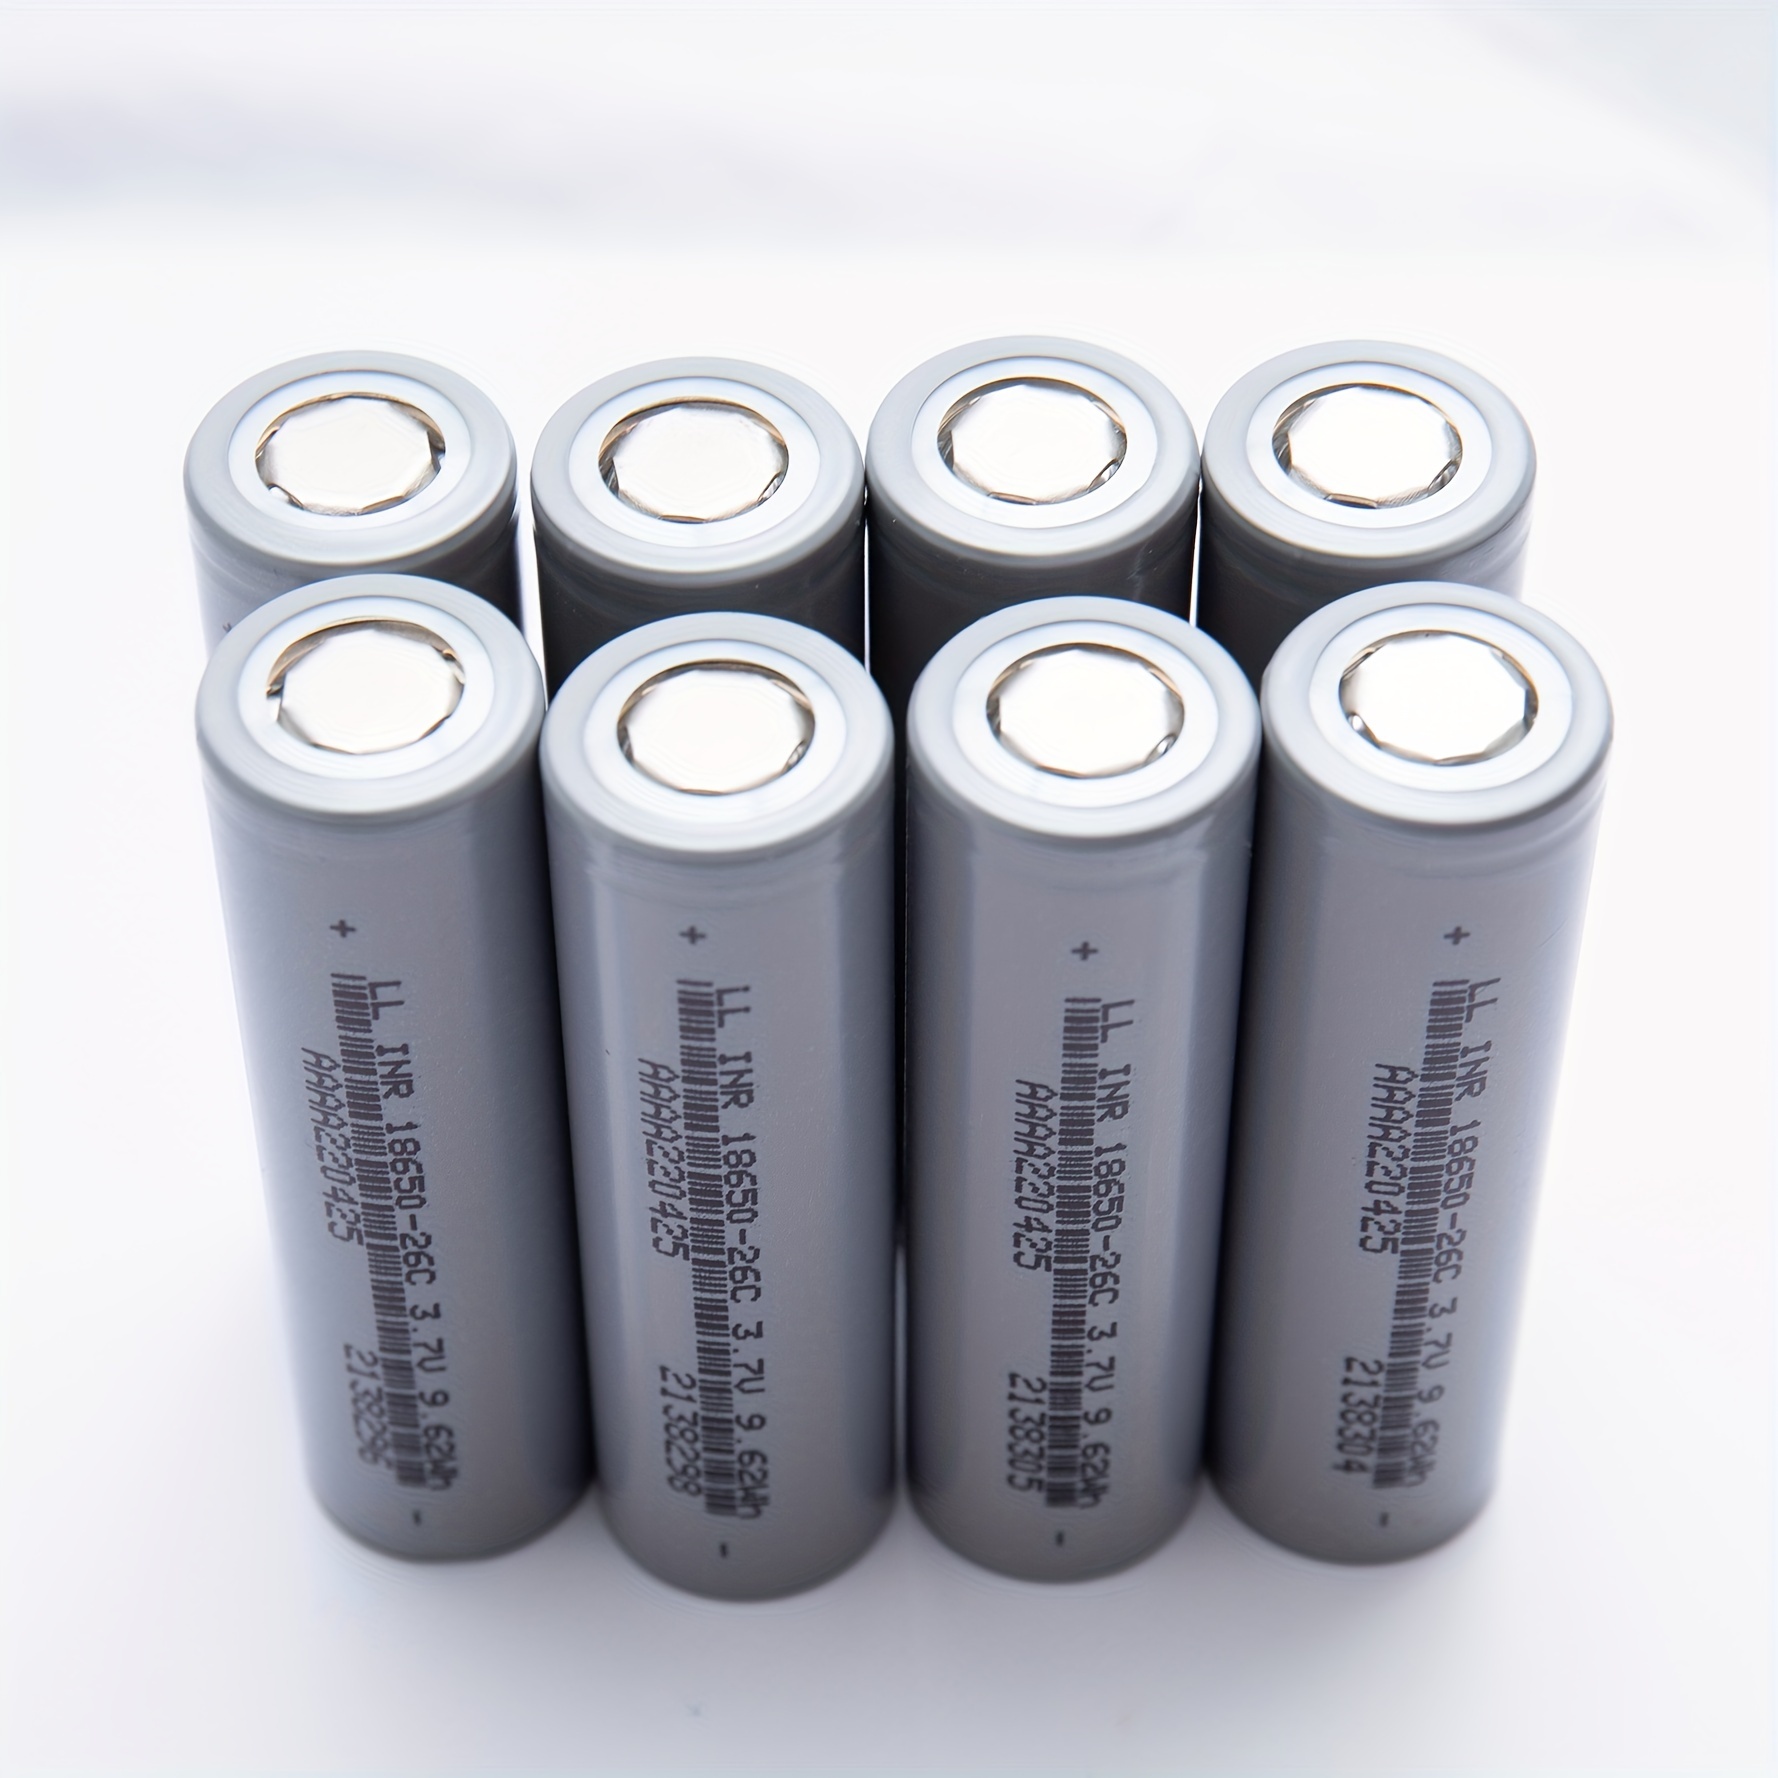  Juego de cargador de batería 18650, batería recargable de 3.7 V  para linternas, faros, ventiladores, cámaras digitales, juguetes, radios,  altavoces, equipo de vigilancia (paquete de 4 baterías) : Automotriz